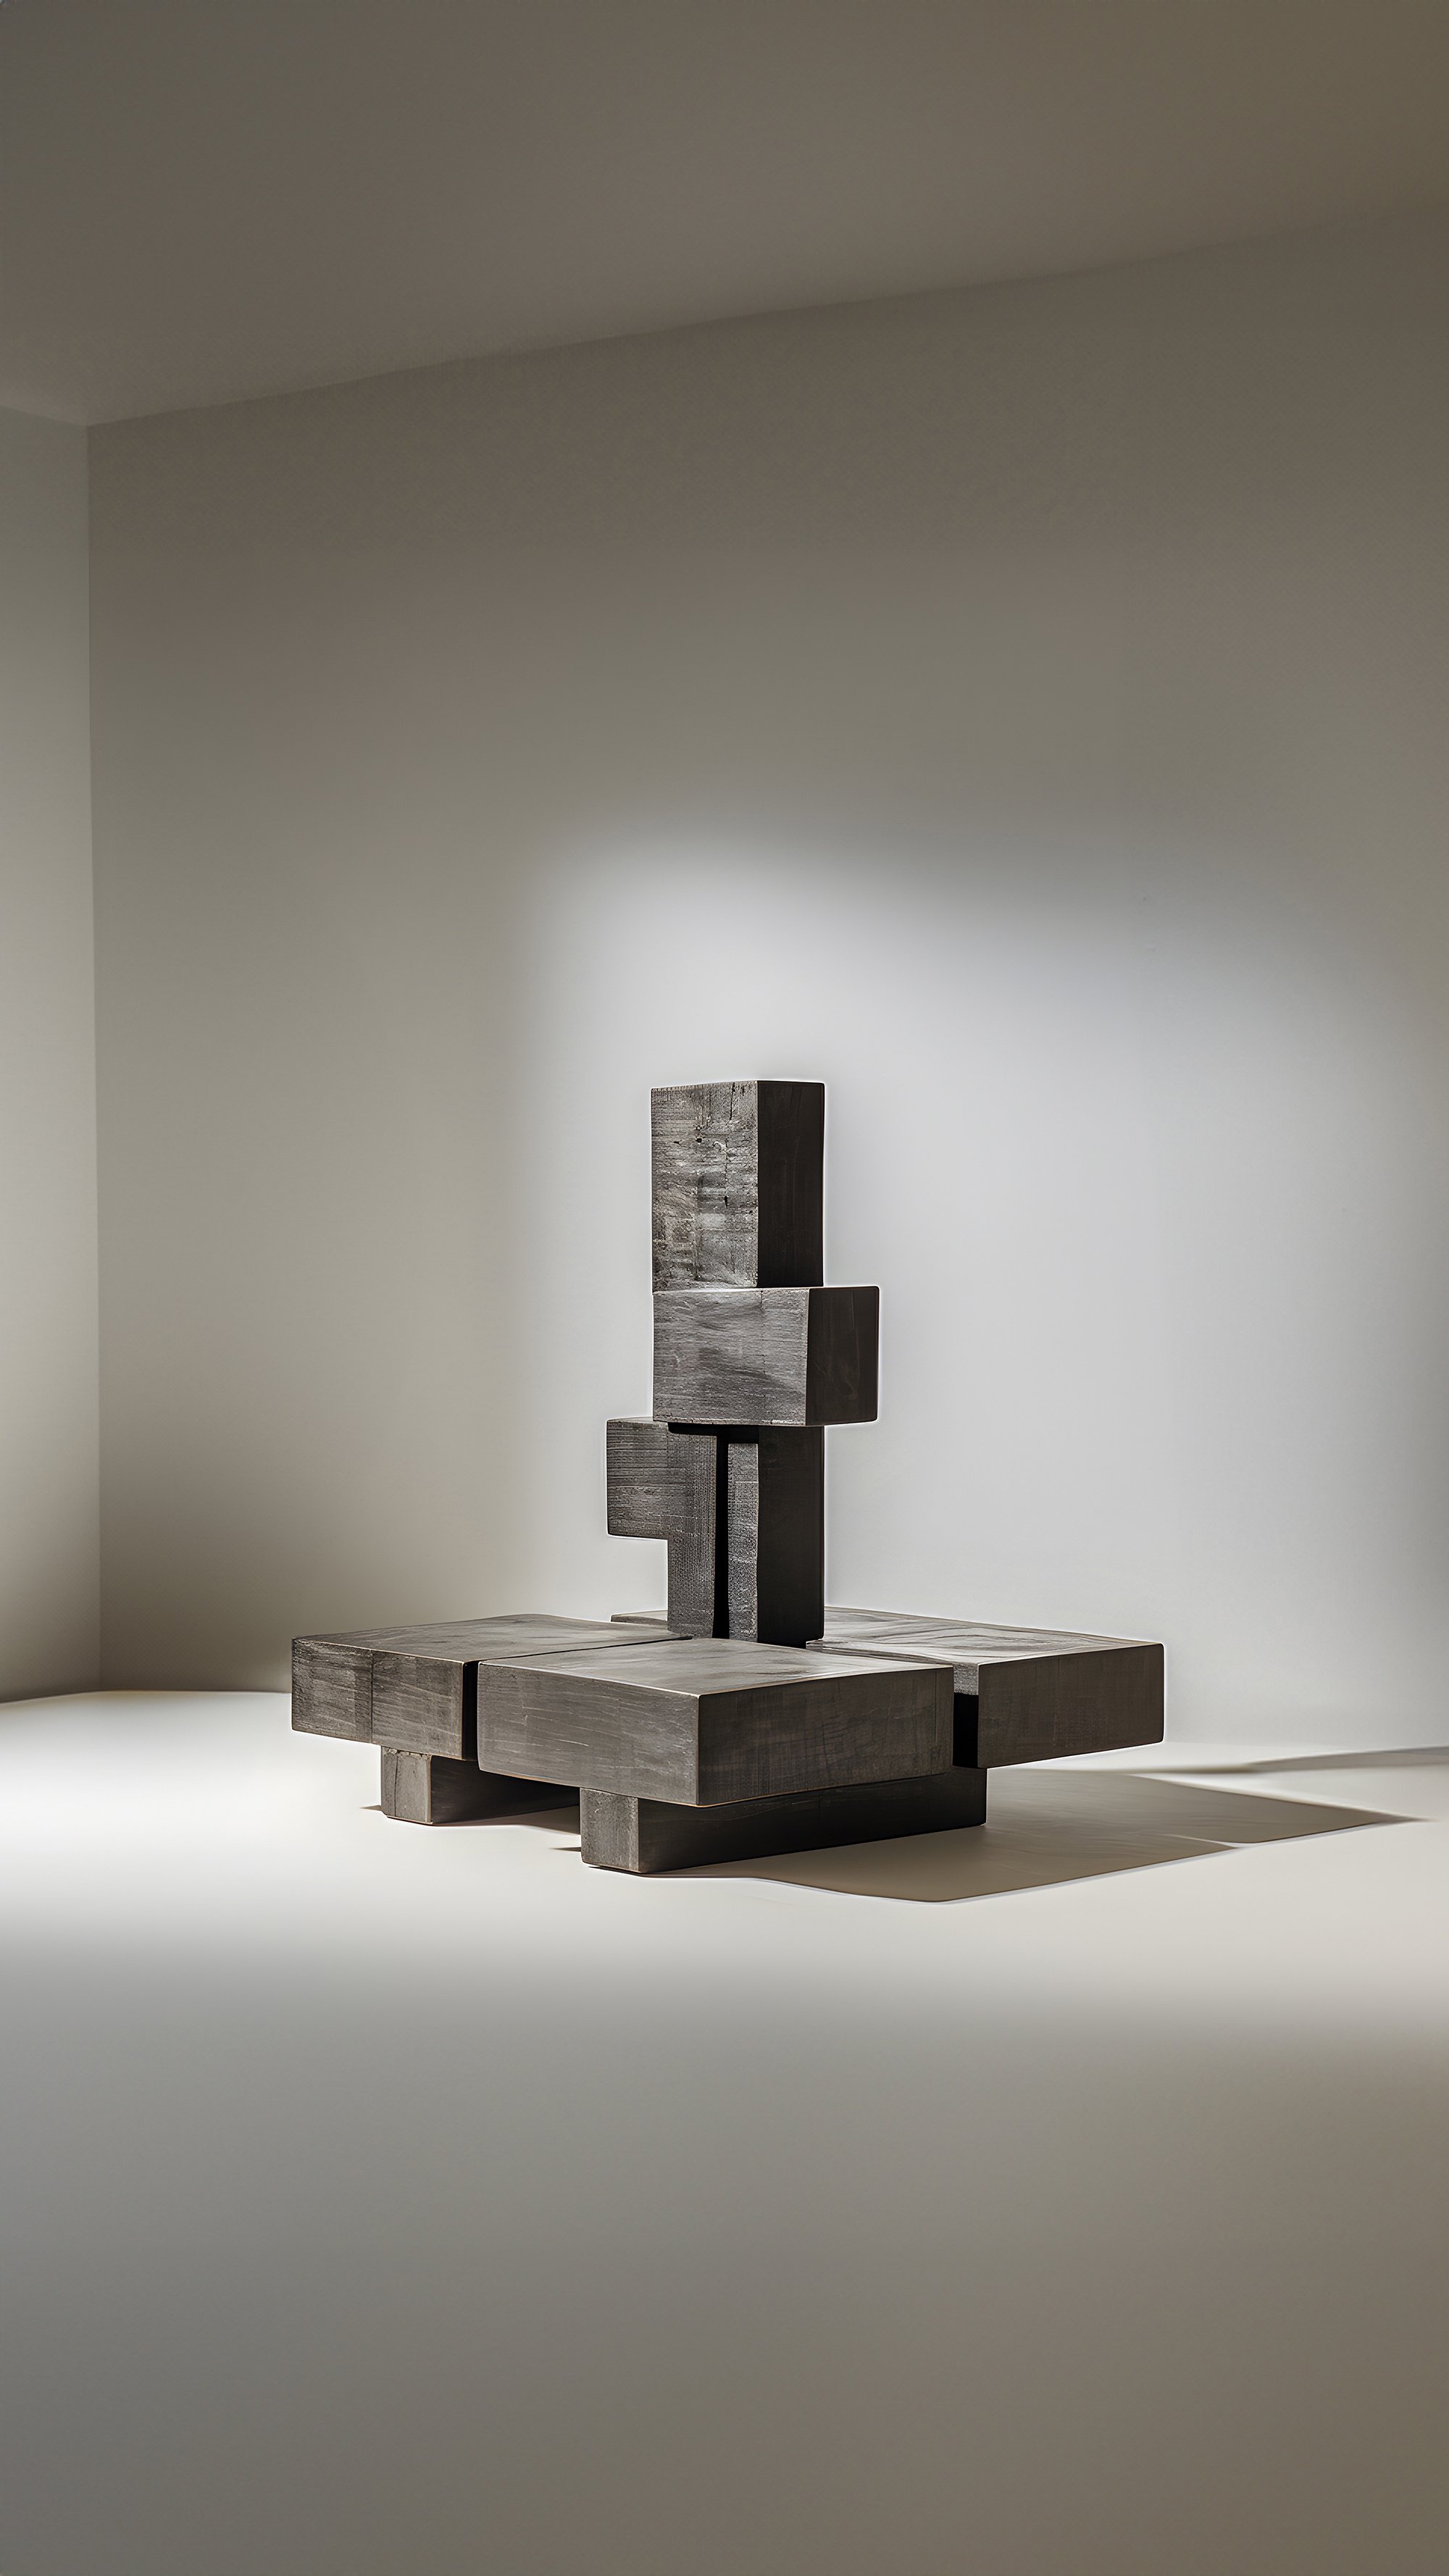 Sculptural Unseen Force 62 Joel Escalona's Solid Wood Table, Modern Art Piece - 4.jpg